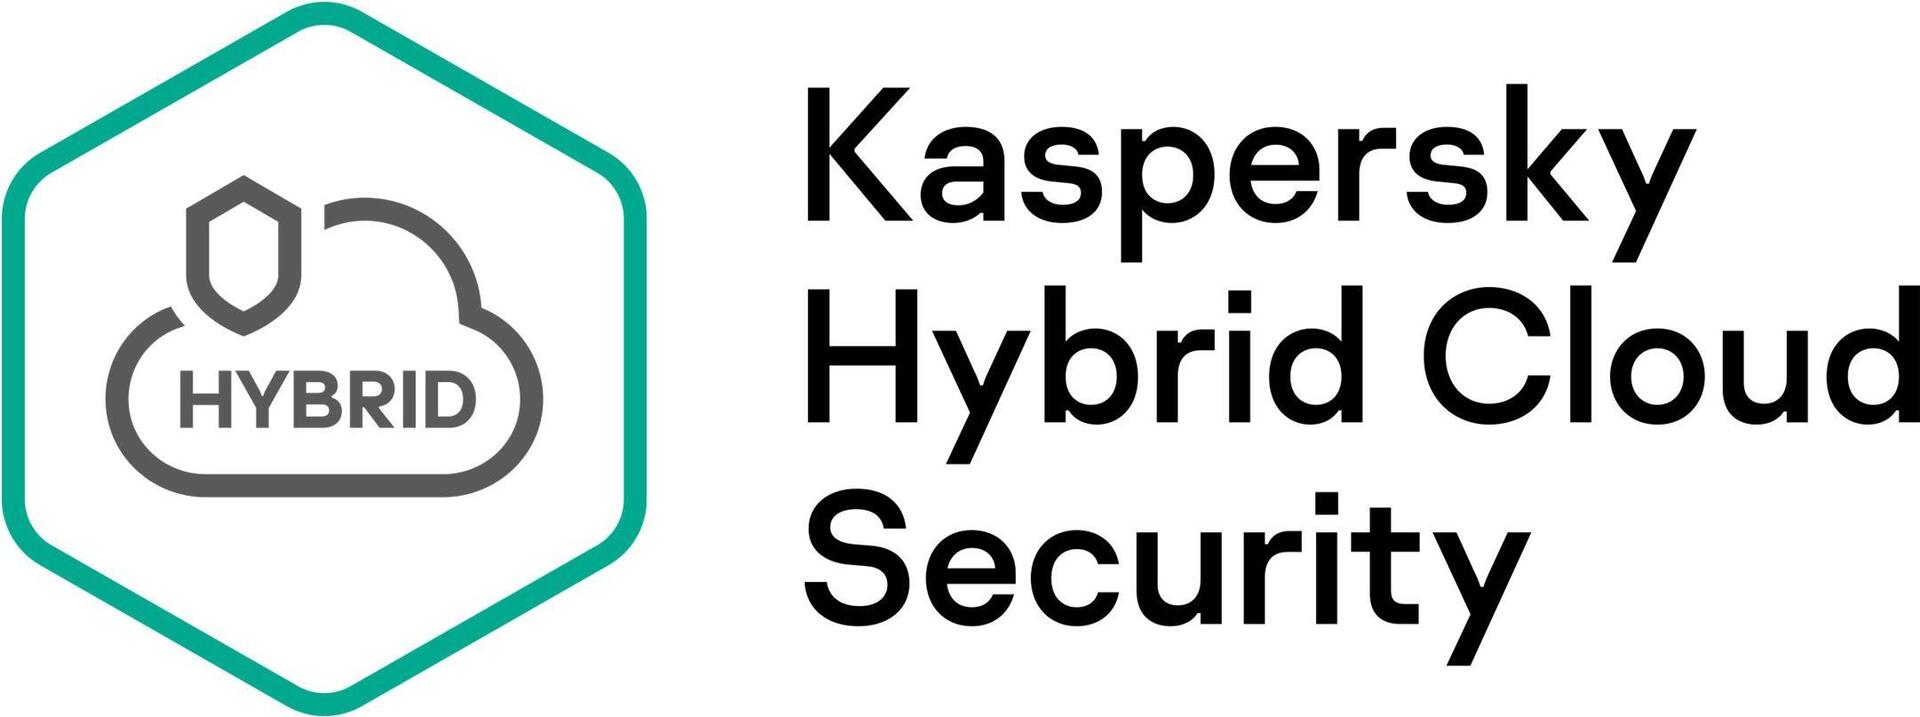 Kaspersky Hybrid Cloud Security Server (KL4255XACT9)